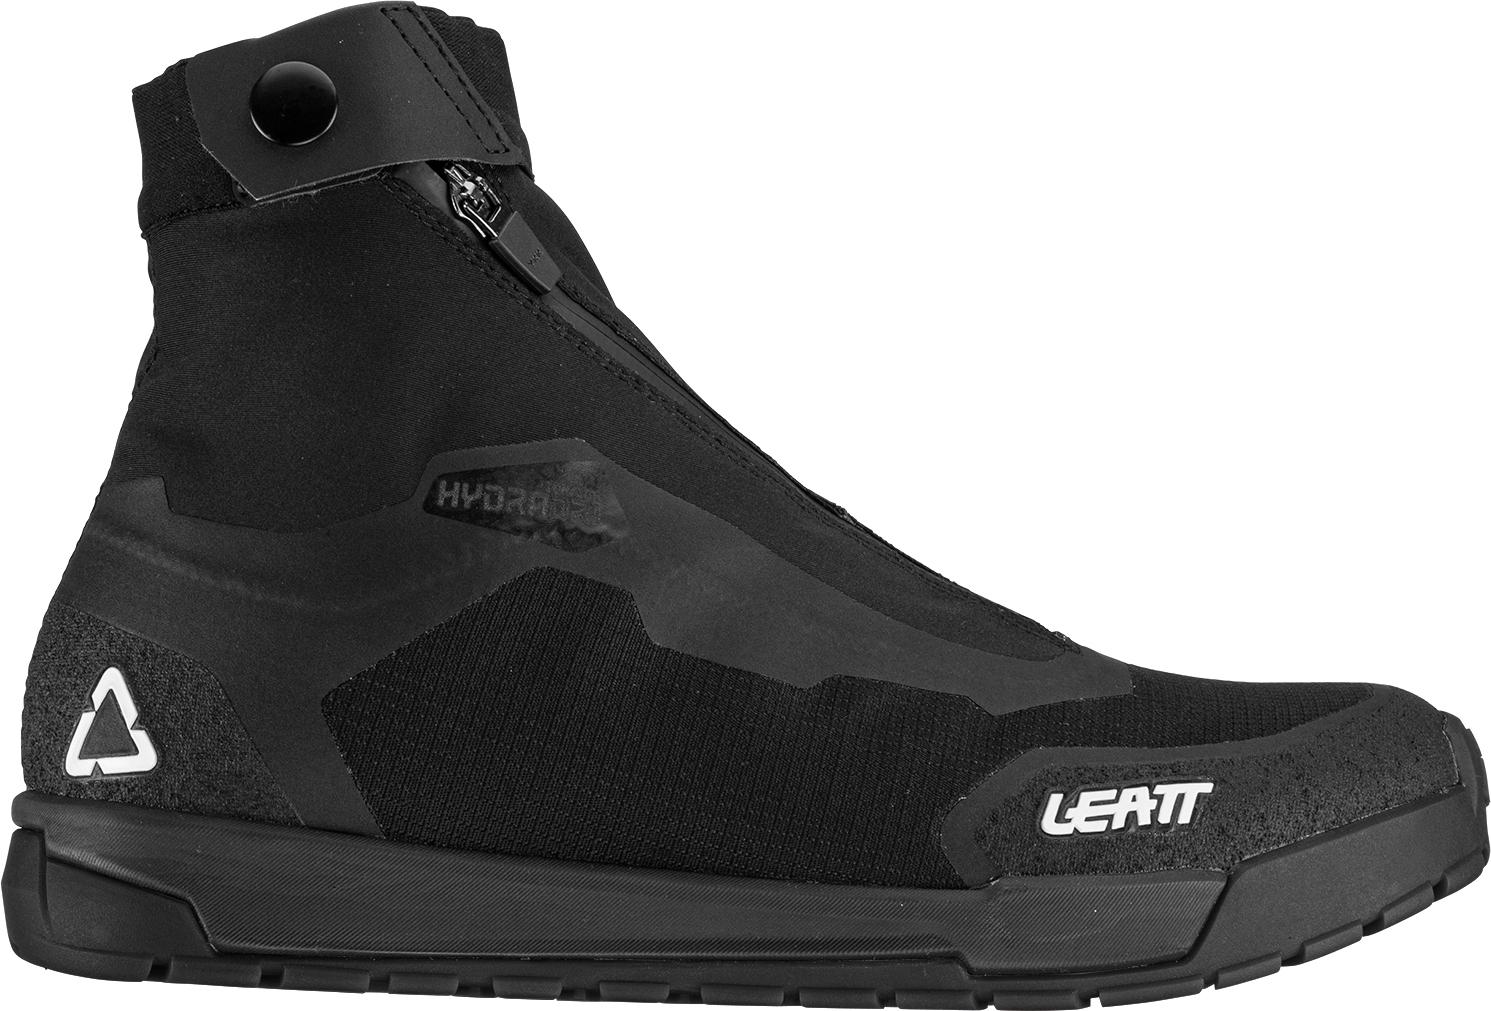 Leatt 7.0 Hydradri Flat Pedal Shoe - Black